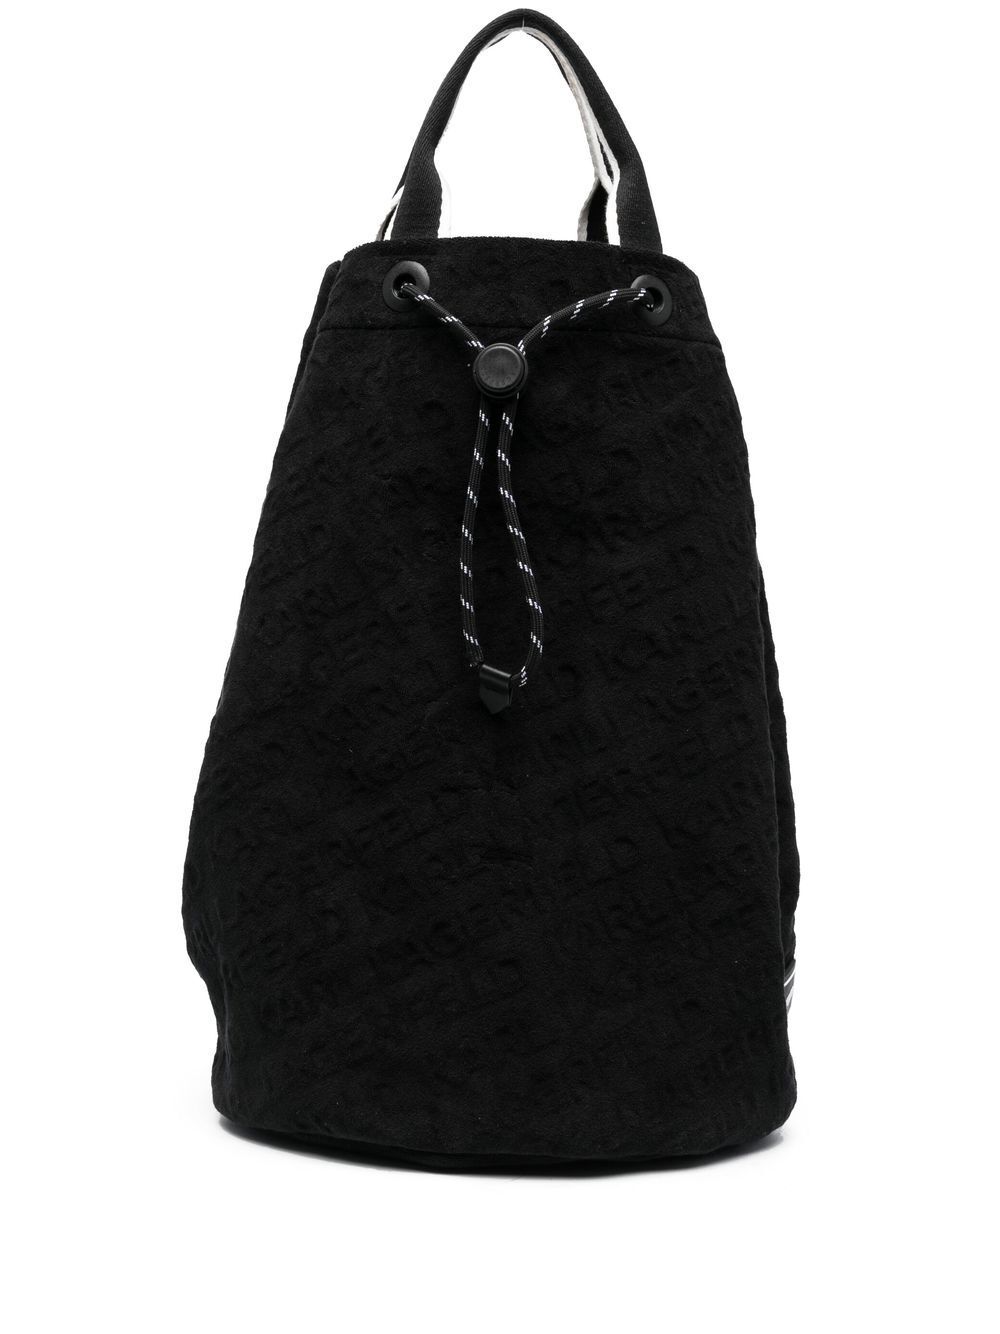 Karl Lagerfeld top-fasten tote bag - Black